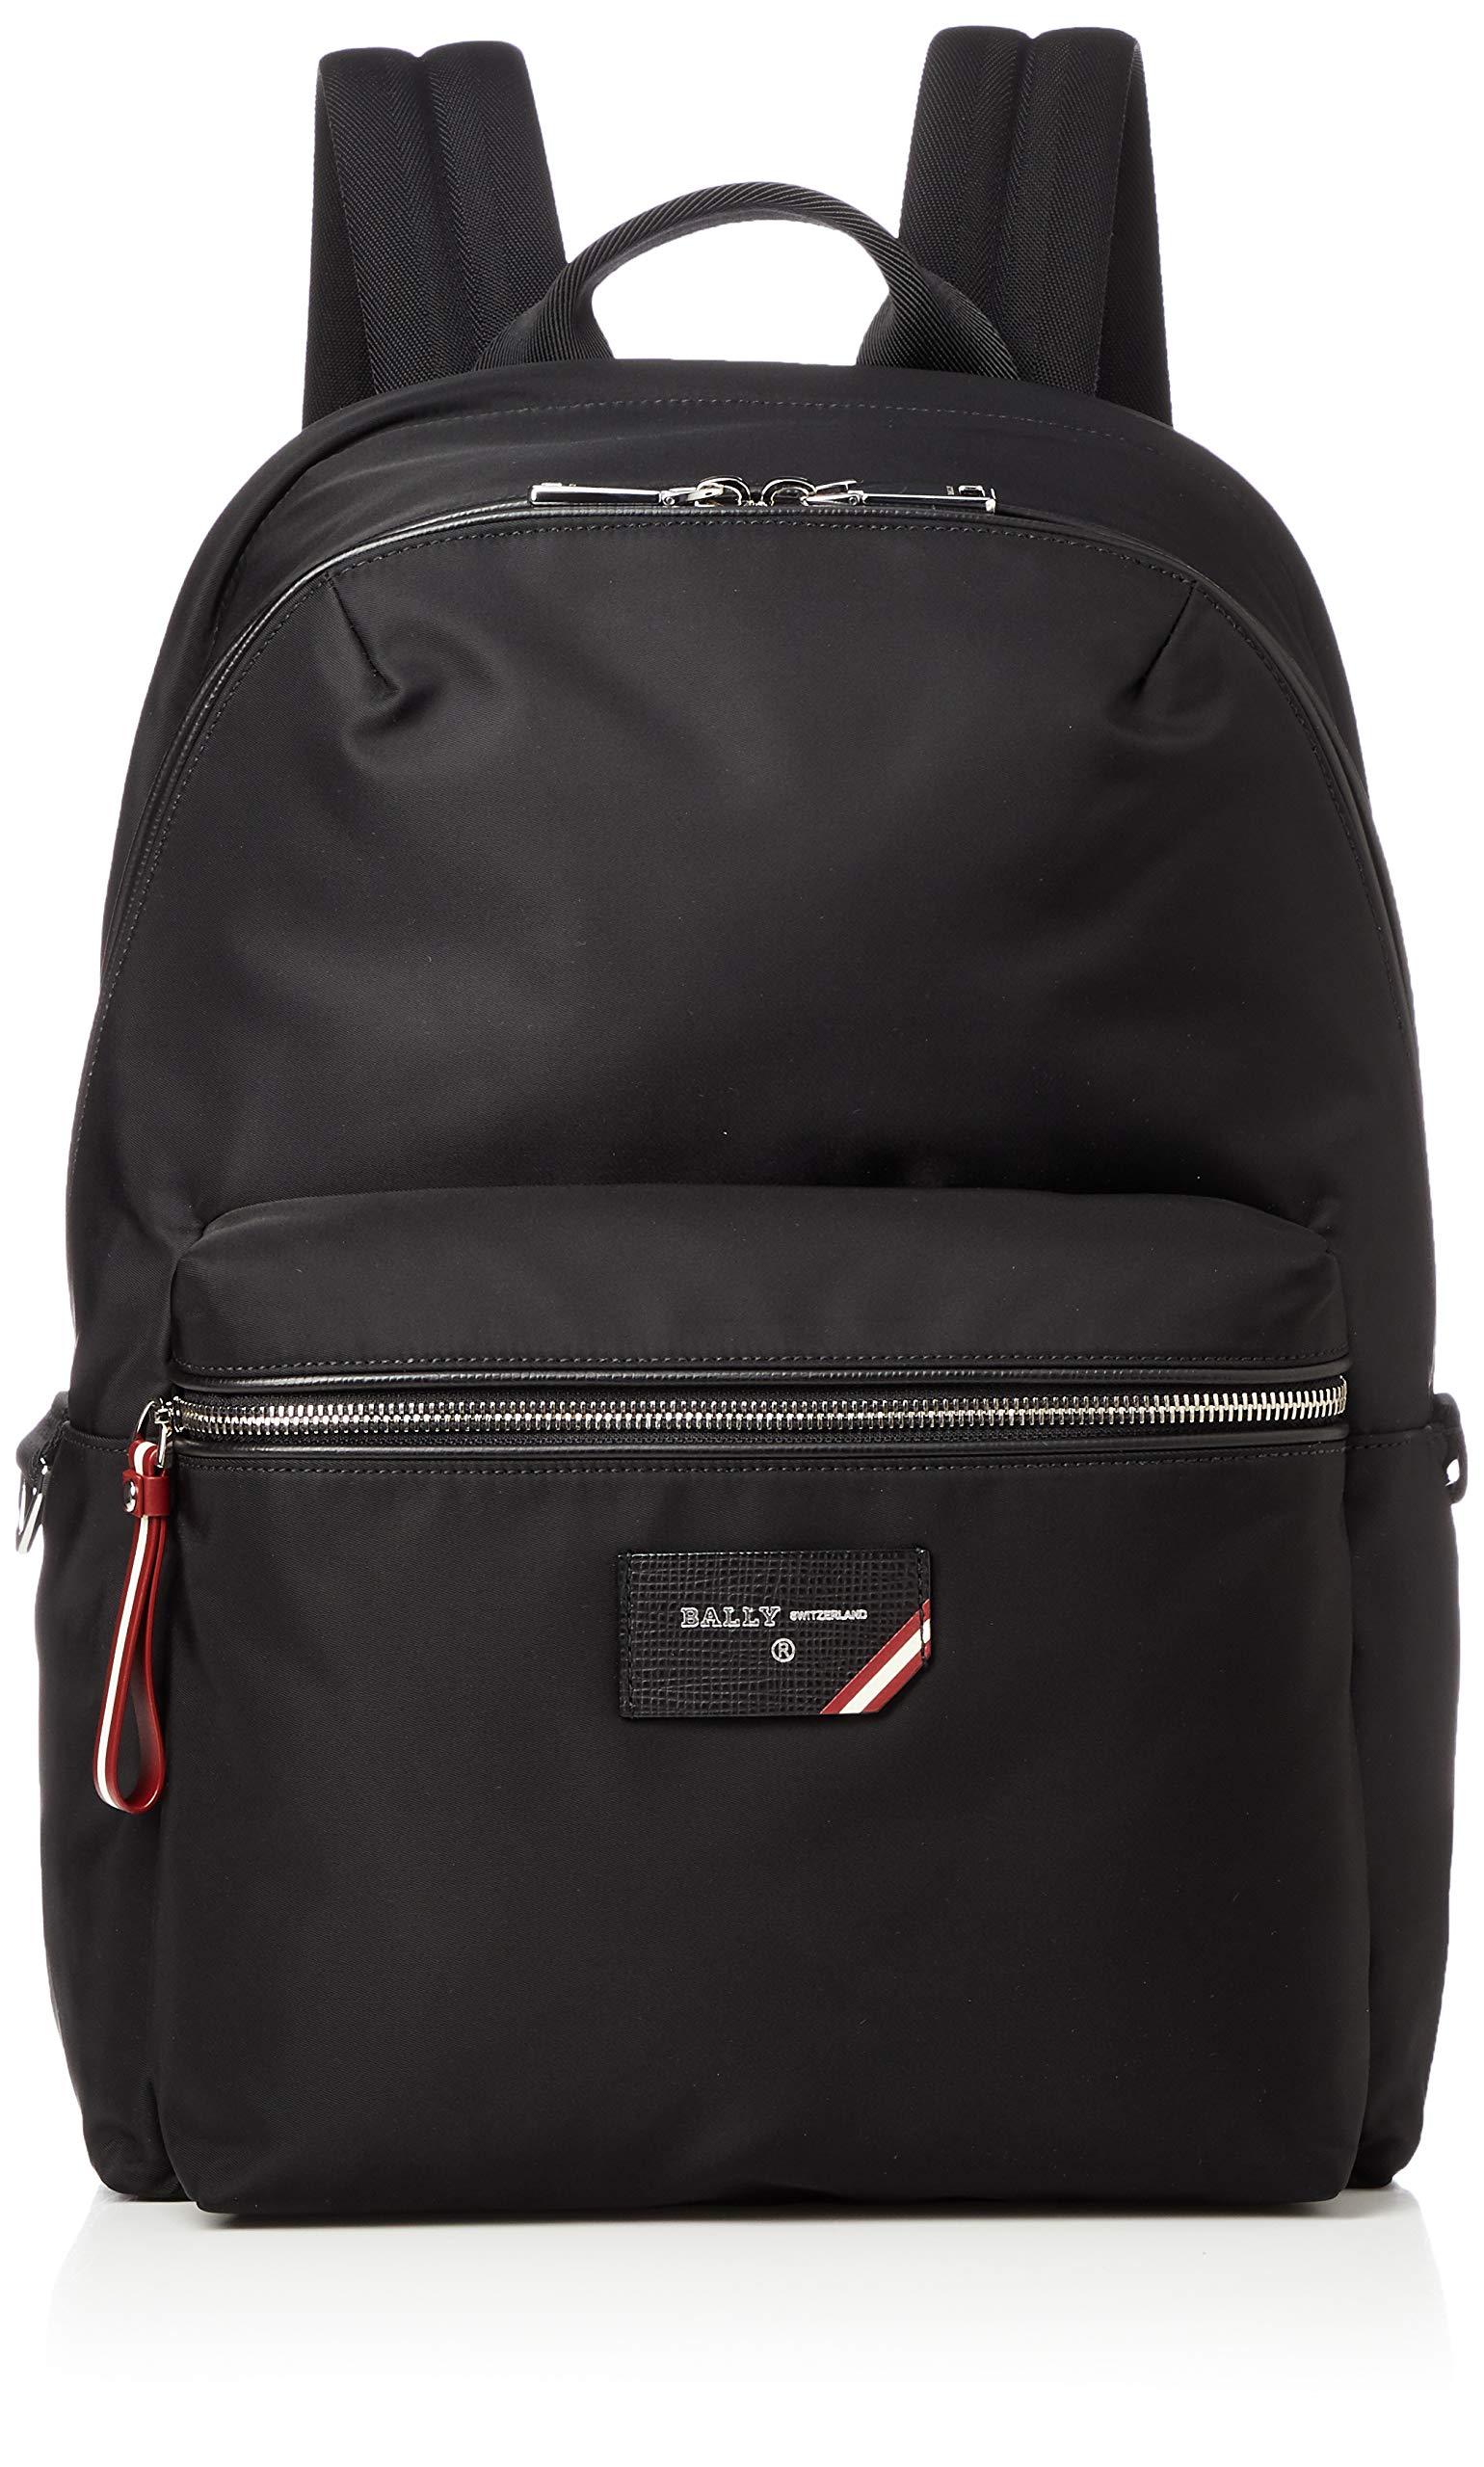 BALLY(バリー) Men's Backpack, Black (Black 19-3911tcx)